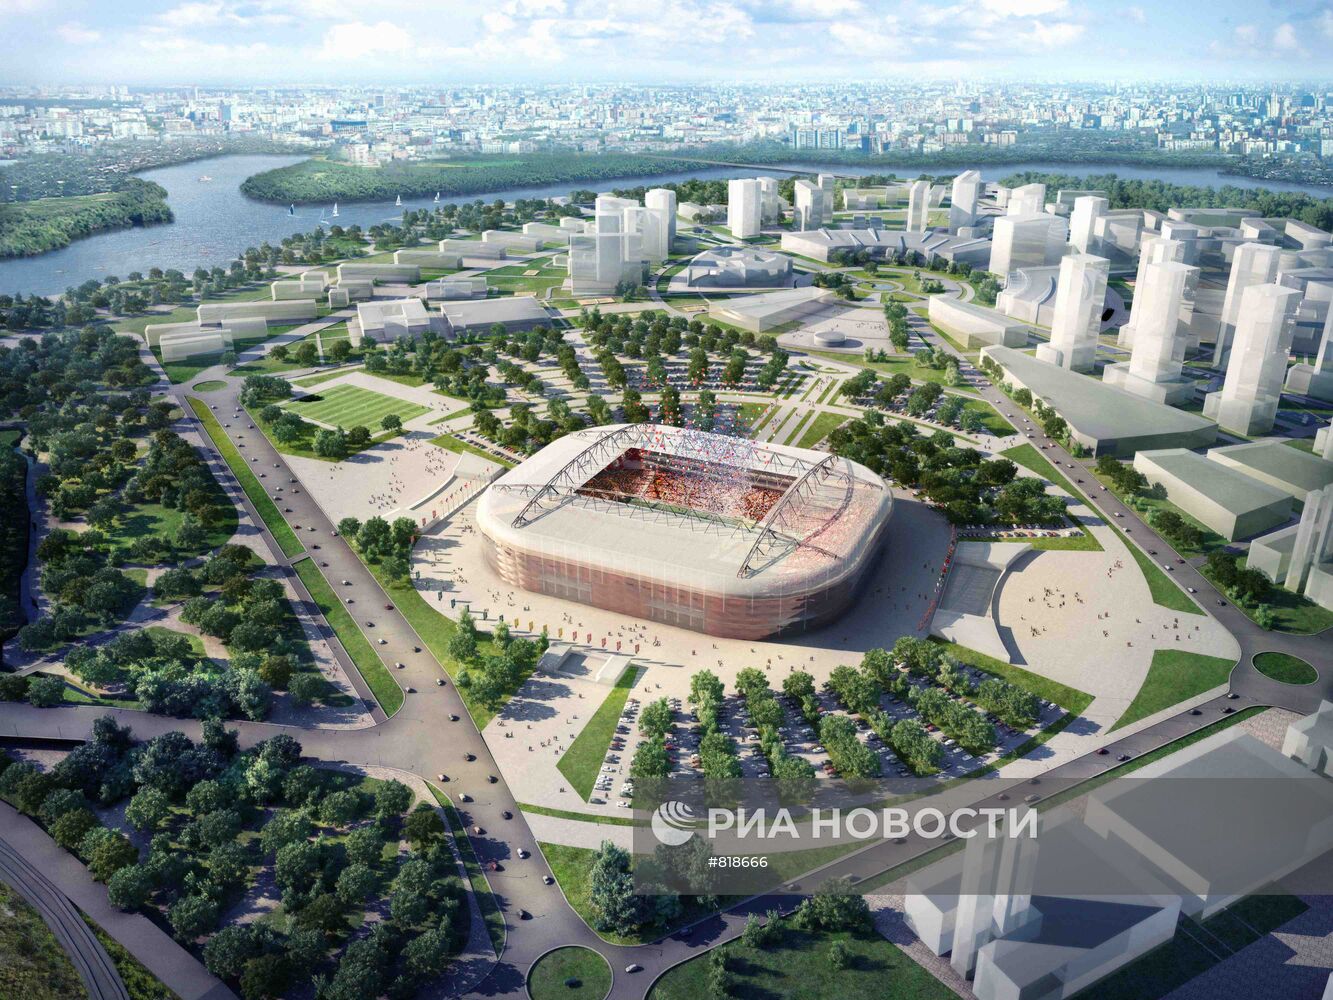 Макет стадиона в Москве к ЧМ по футболу 2018 года